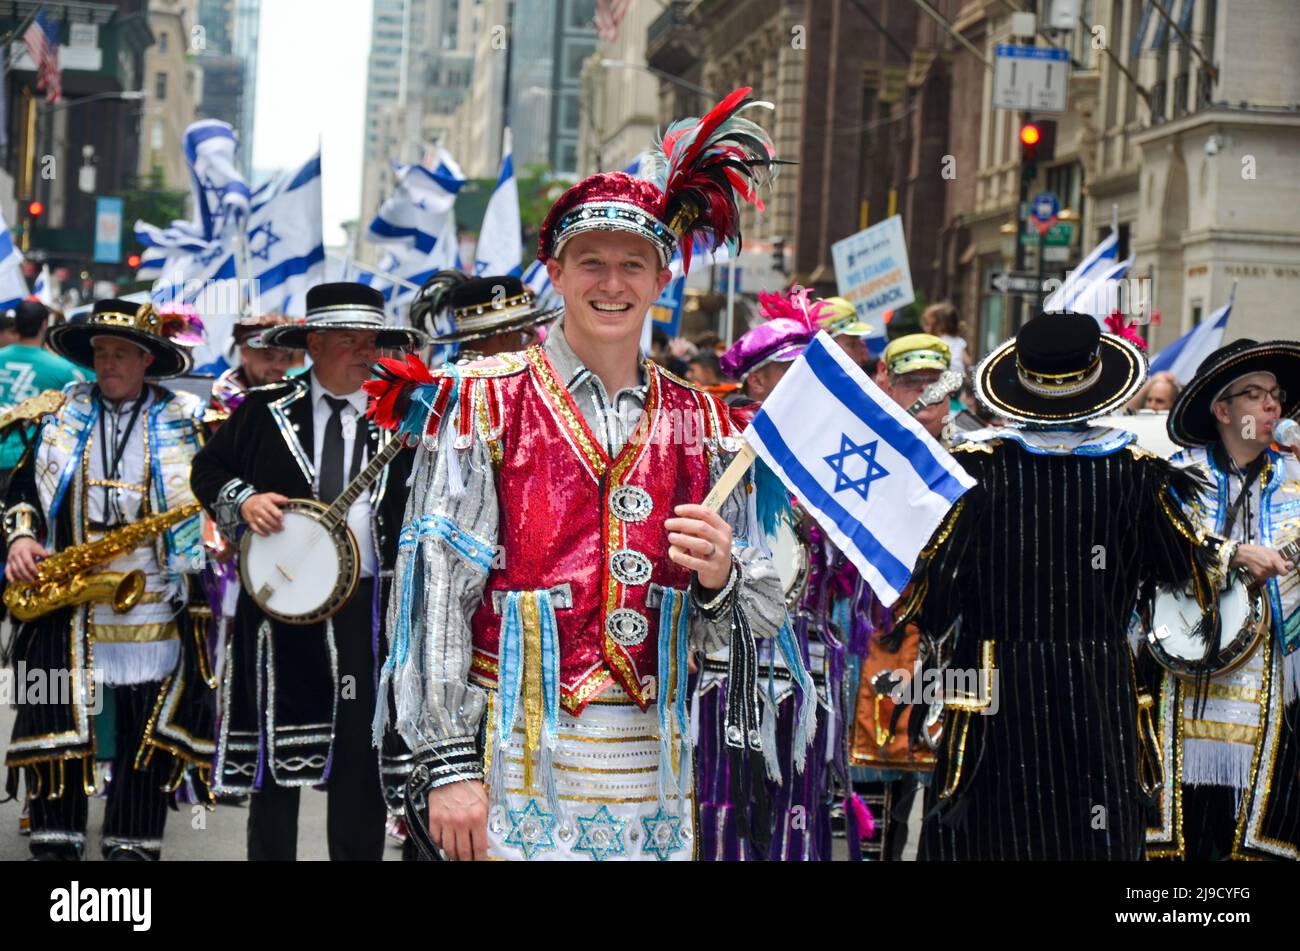 Die Teilnehmerin hält die israelische Flagge und marschiert während der Parade in New York City, um den 74.. Jahrestag der Gründung der israelischen Nationalfeierlich zu begehen Stockfoto